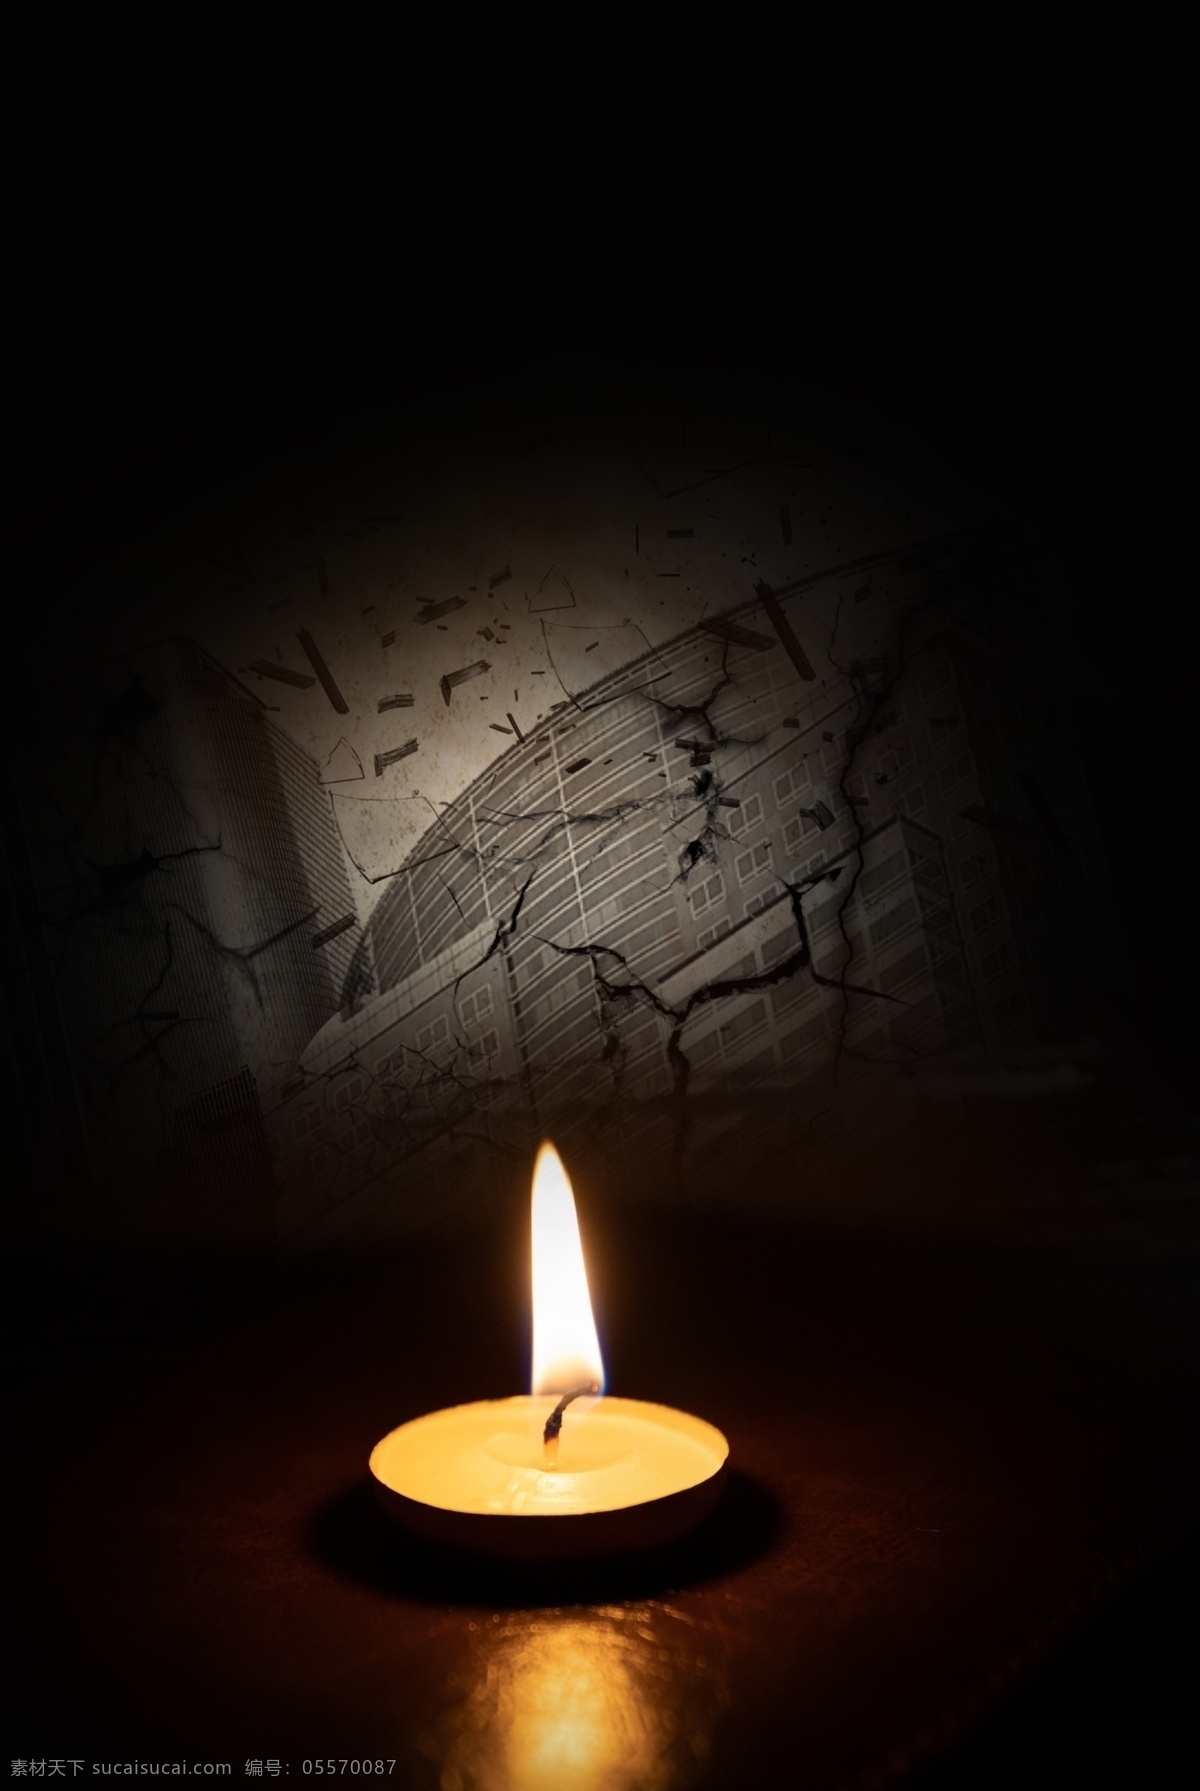 简约 大气 自然灾害 祈祷 平安 背景 蜡烛 祈福 黑色背景 海报 蜡烛祈福 希望 思念